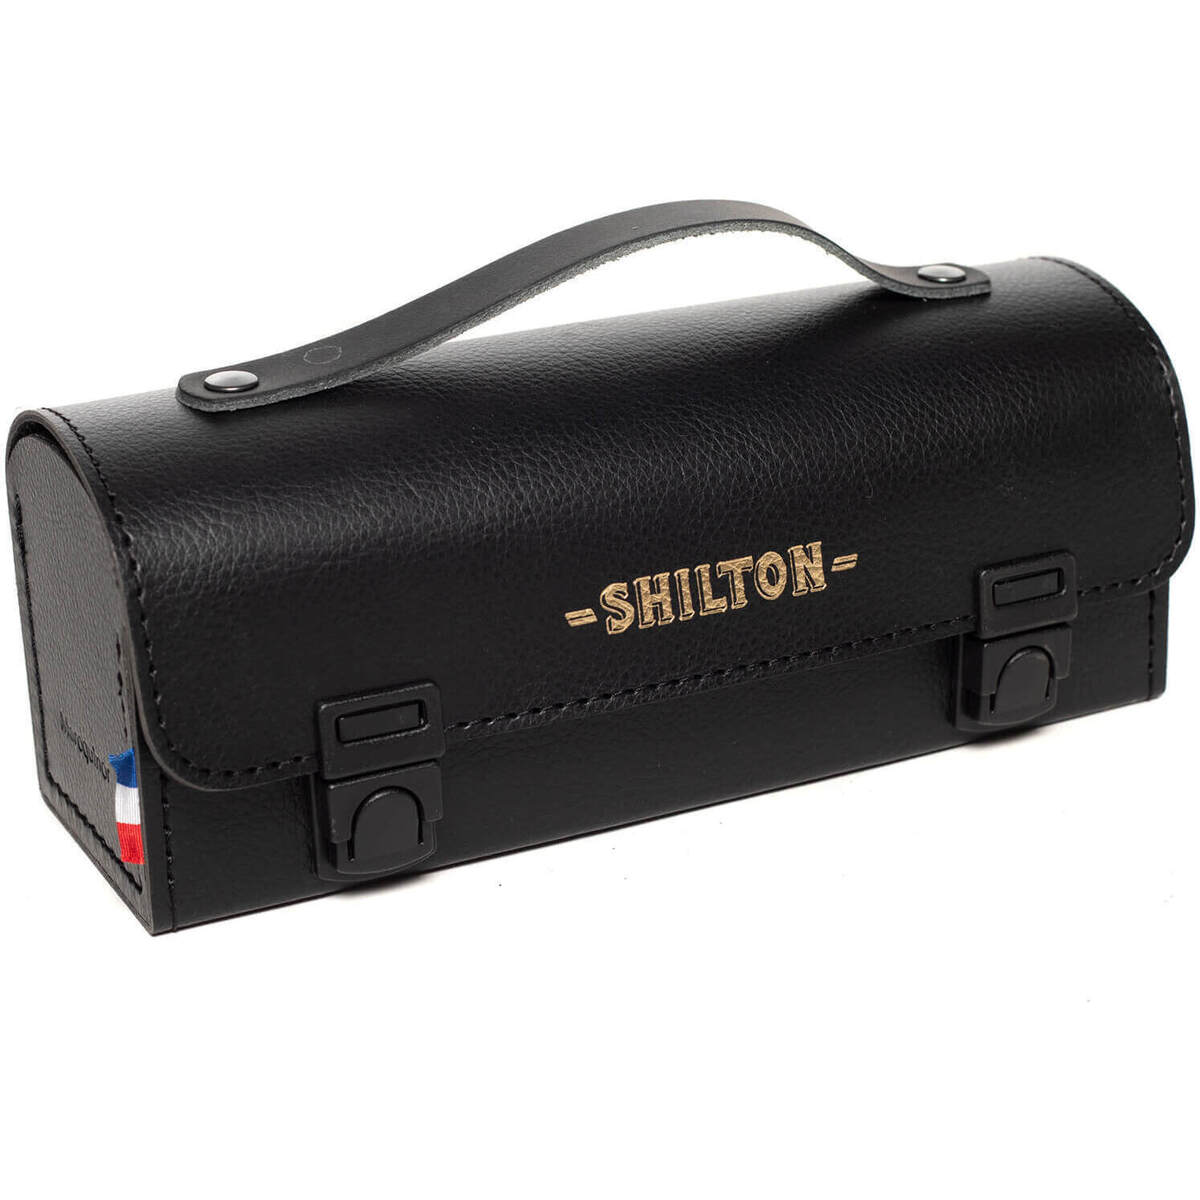 Shilton Noir Sacoche de pétanque made in France mLM08tdX